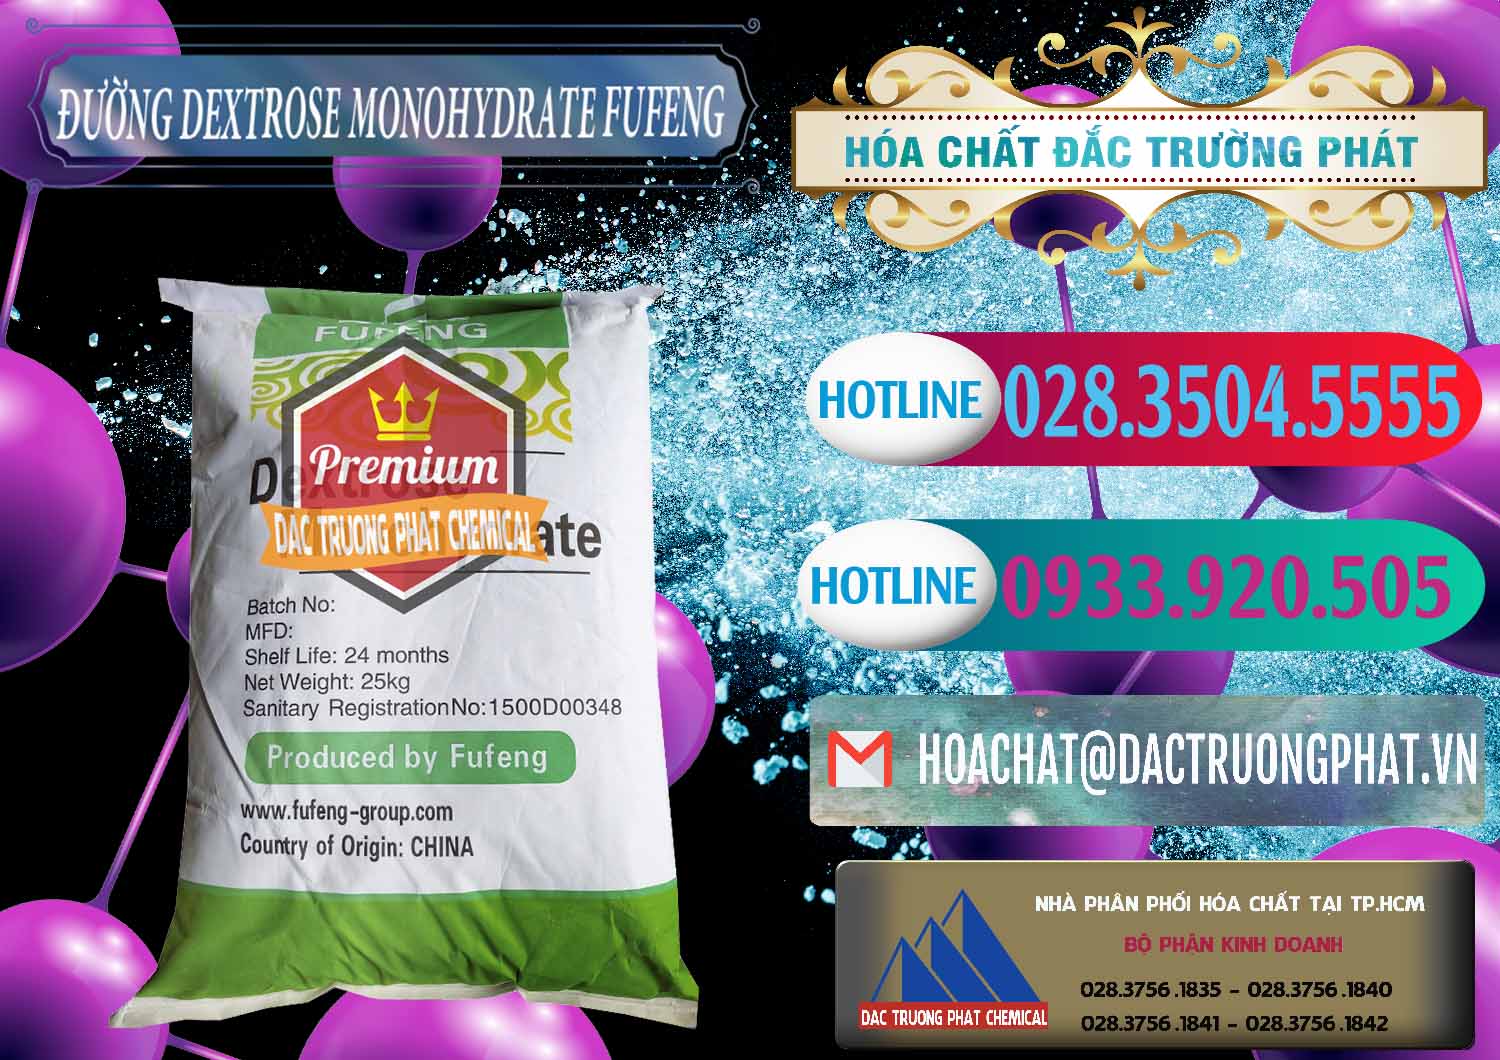 Kinh doanh và bán Đường Dextrose Monohydrate Food Grade Fufeng Trung Quốc China - 0223 - Chuyên phân phối _ cung ứng hóa chất tại TP.HCM - truongphat.vn